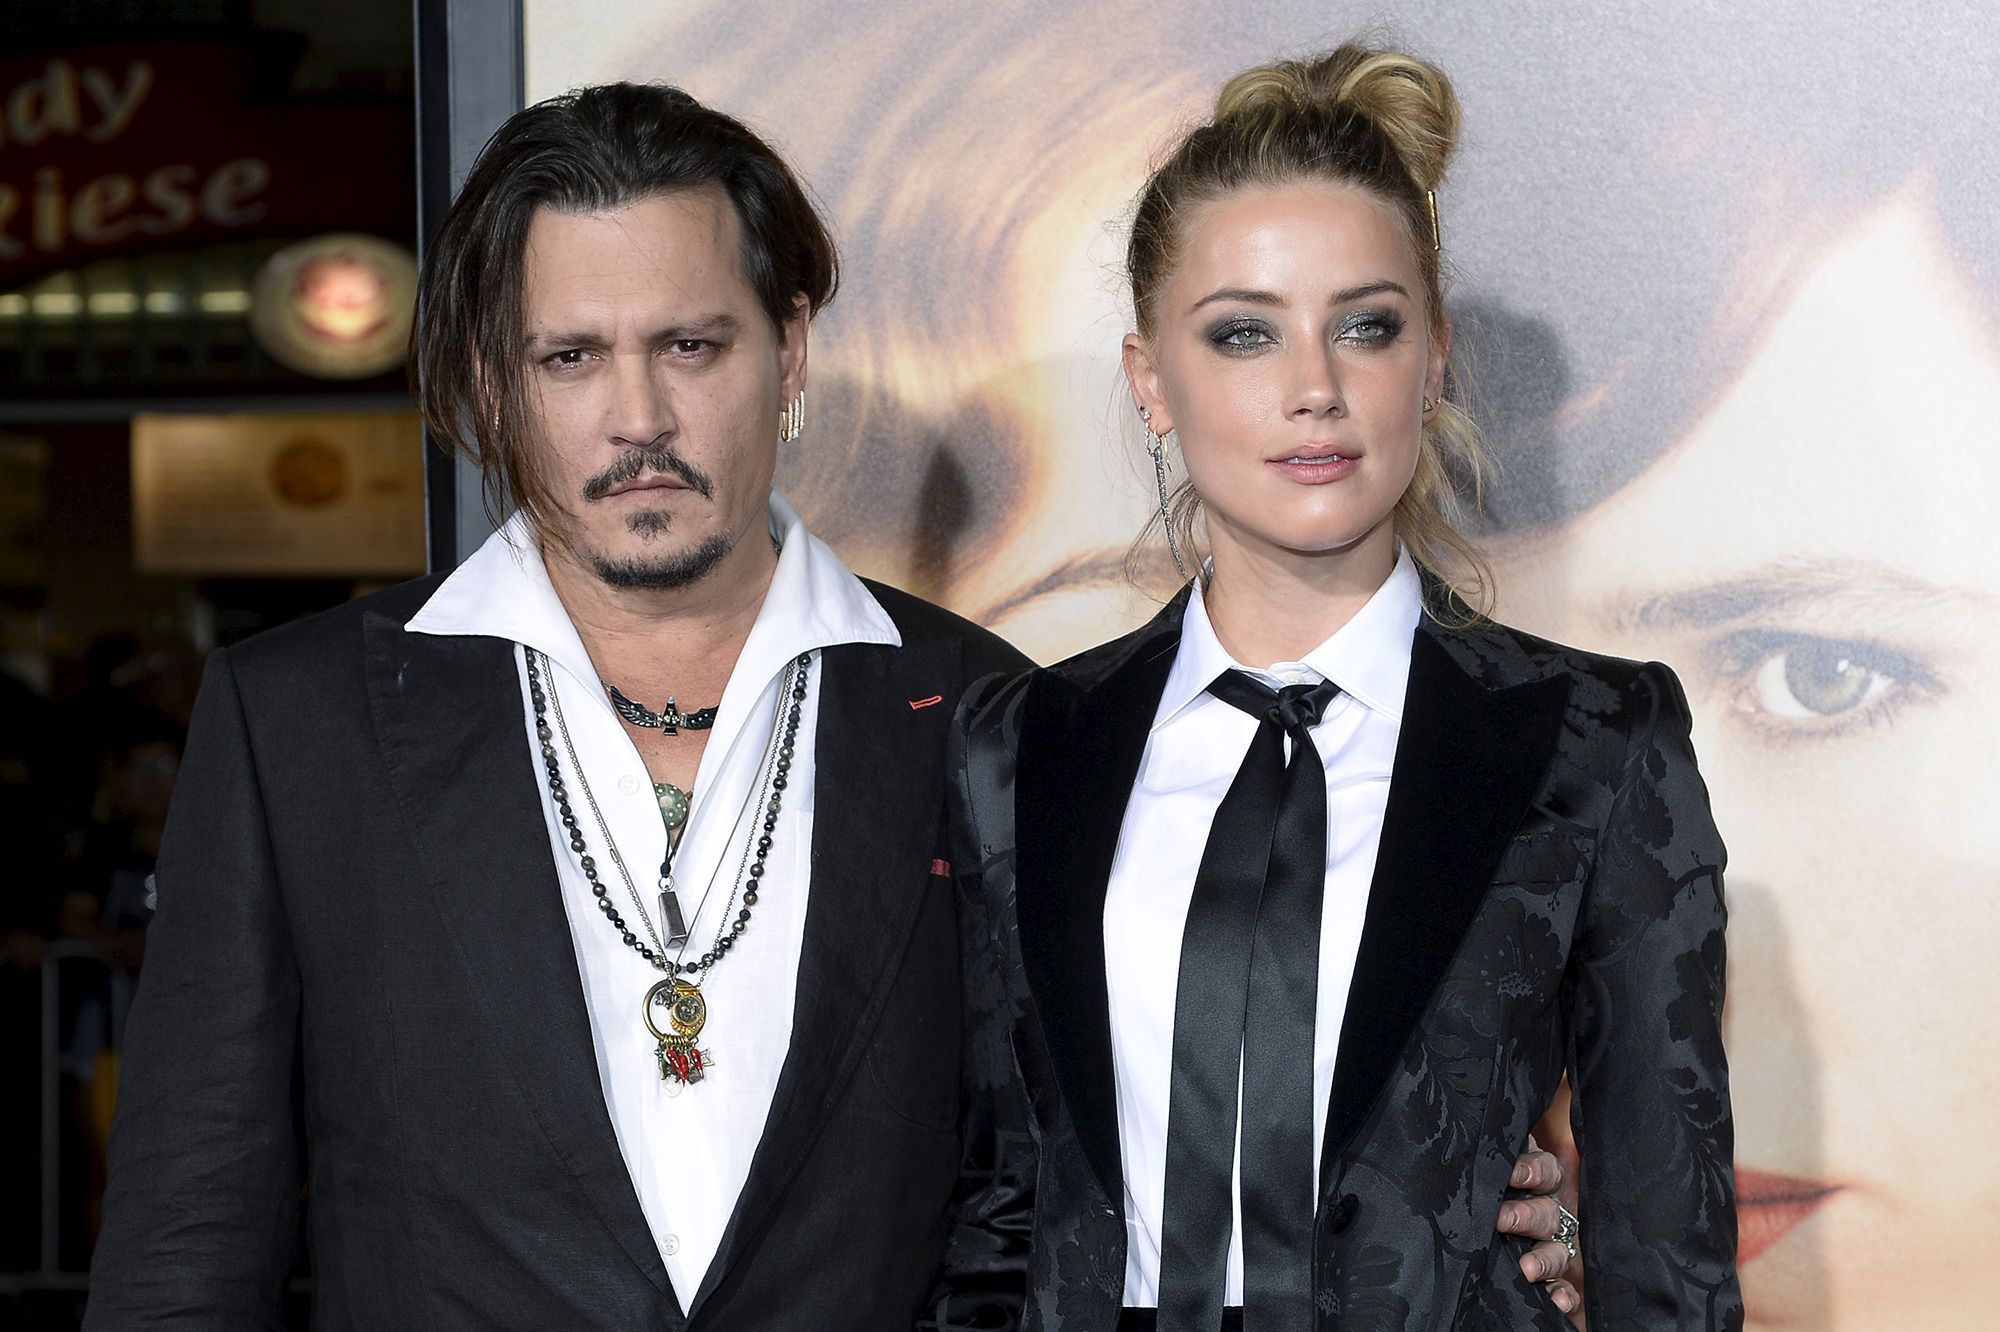 L'affaire Johnny Depp vs Amber Heard va être au coeur d'un documentaire